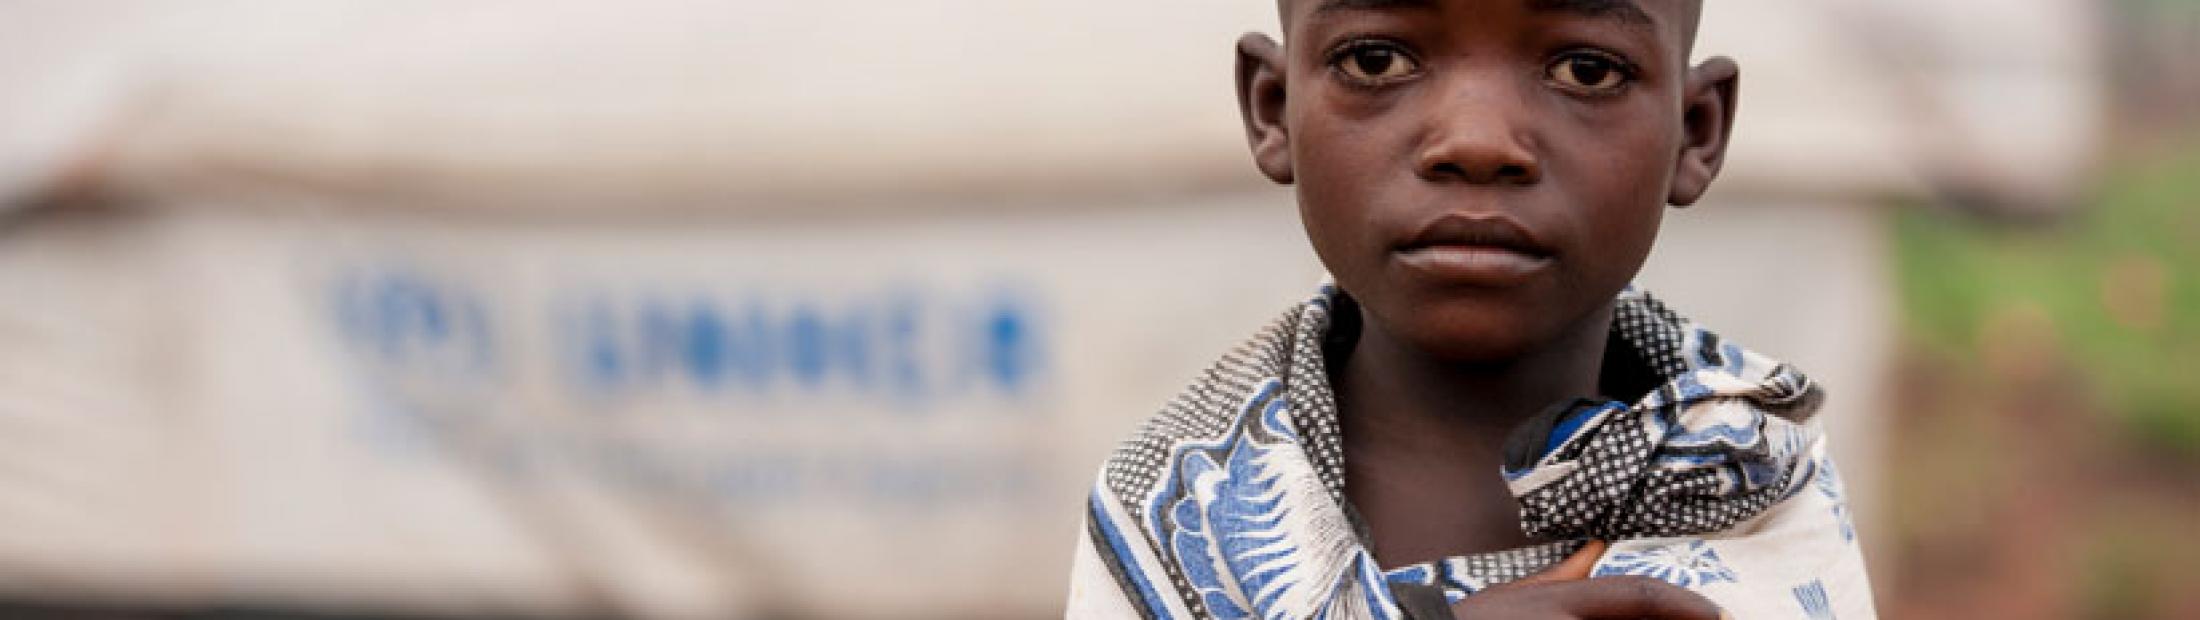 Varicela en niños y otras enfermedades que sufren los refugiados más pequeños